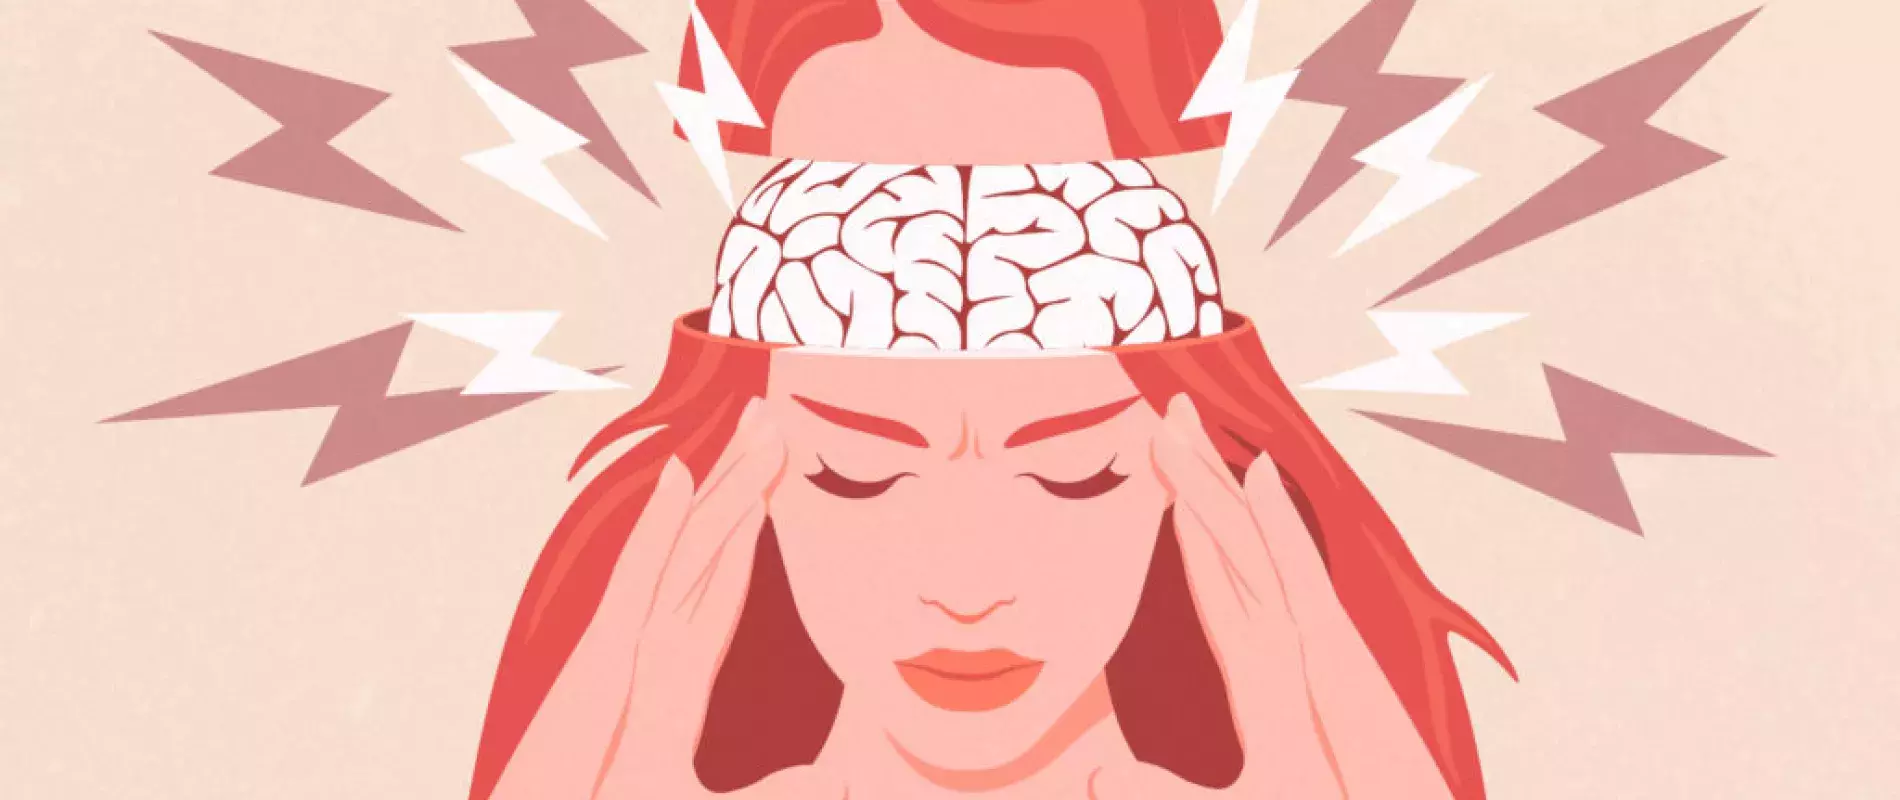 Bandeau tête magnétique soulage migraines, aura migraineuse, céphalées